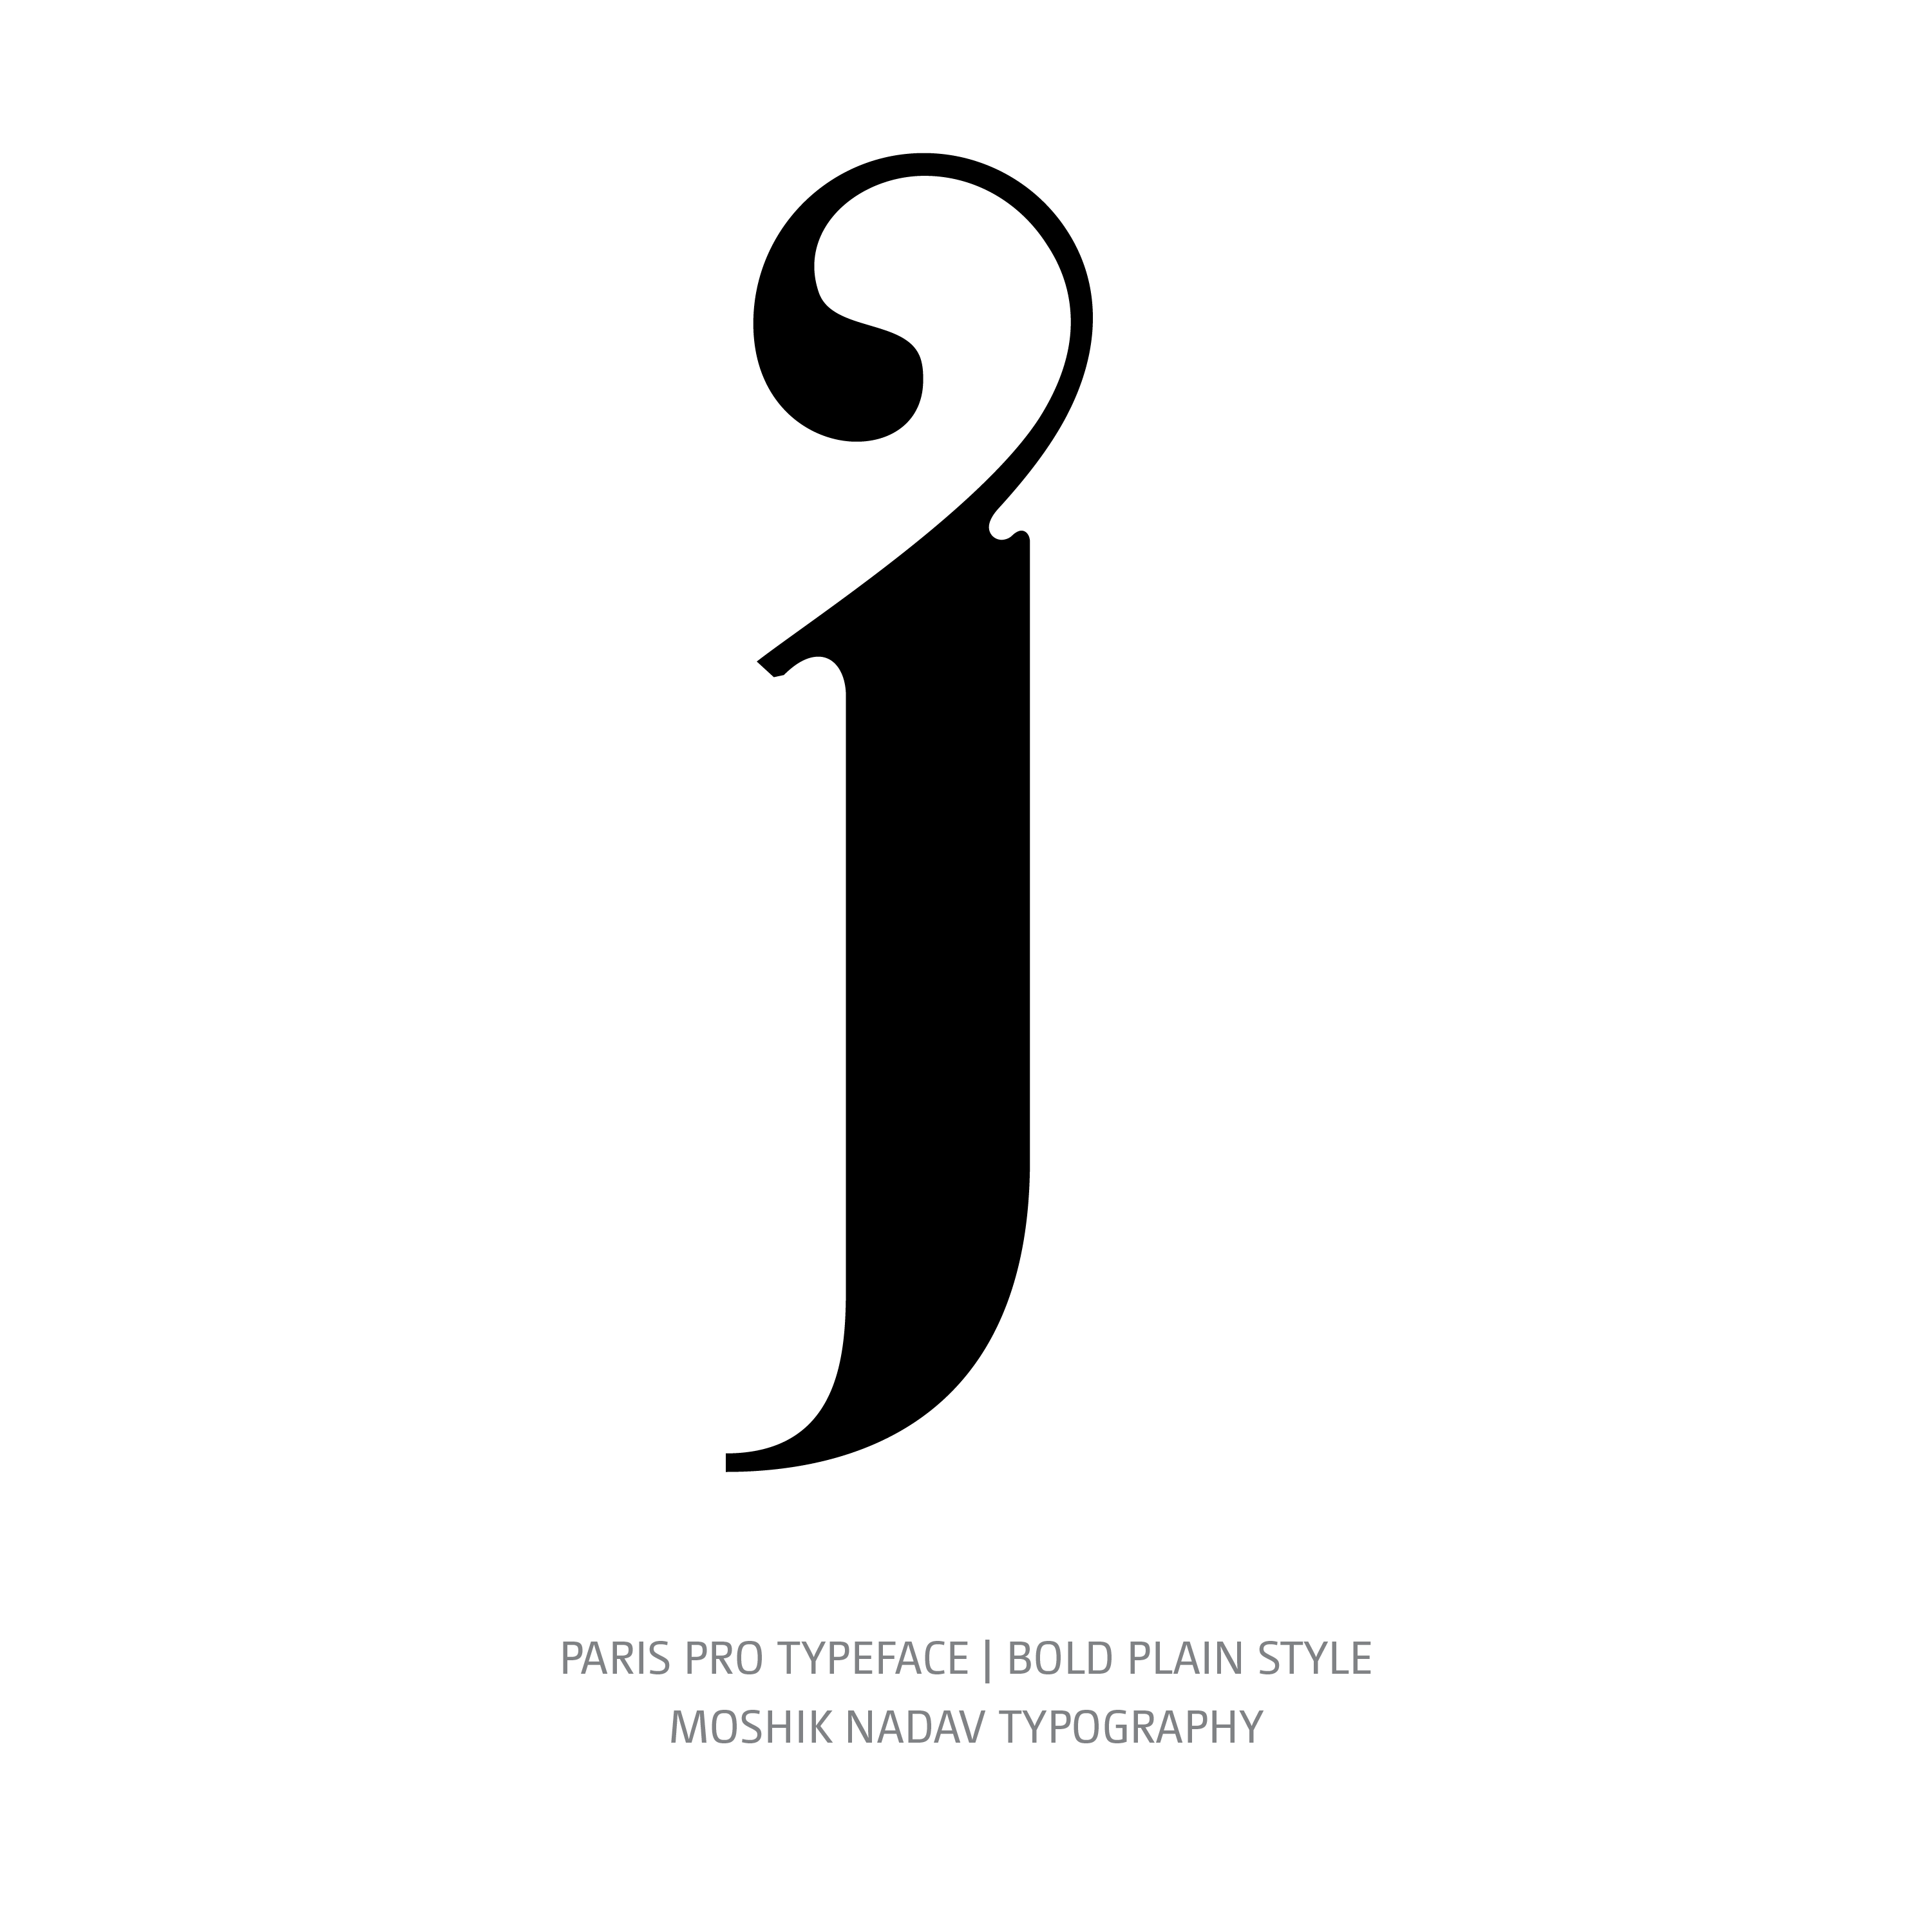 Paris Pro Typeface Bold Plain j